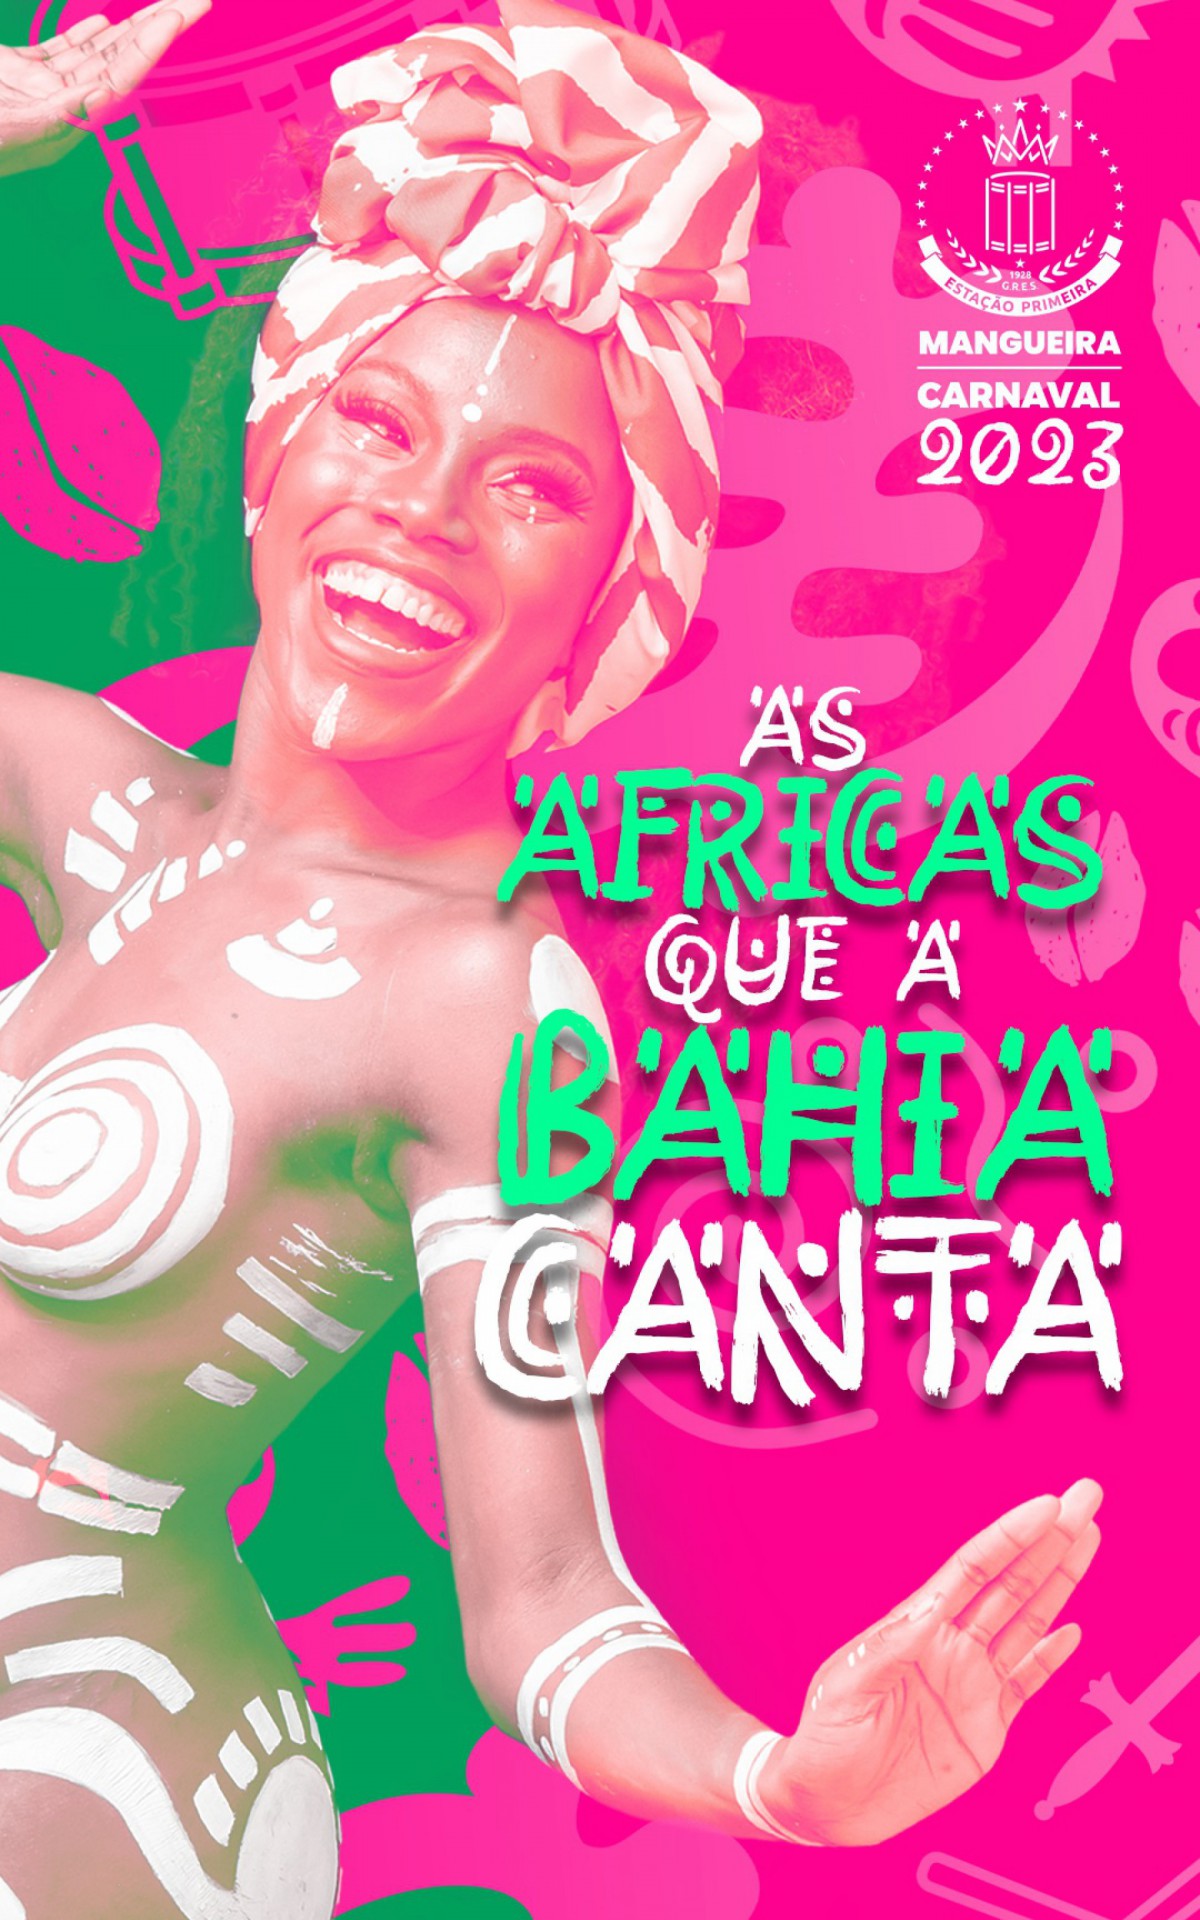 Mangueira anuncia enredo do Carnaval de 2023 - Foto: Divulgação 